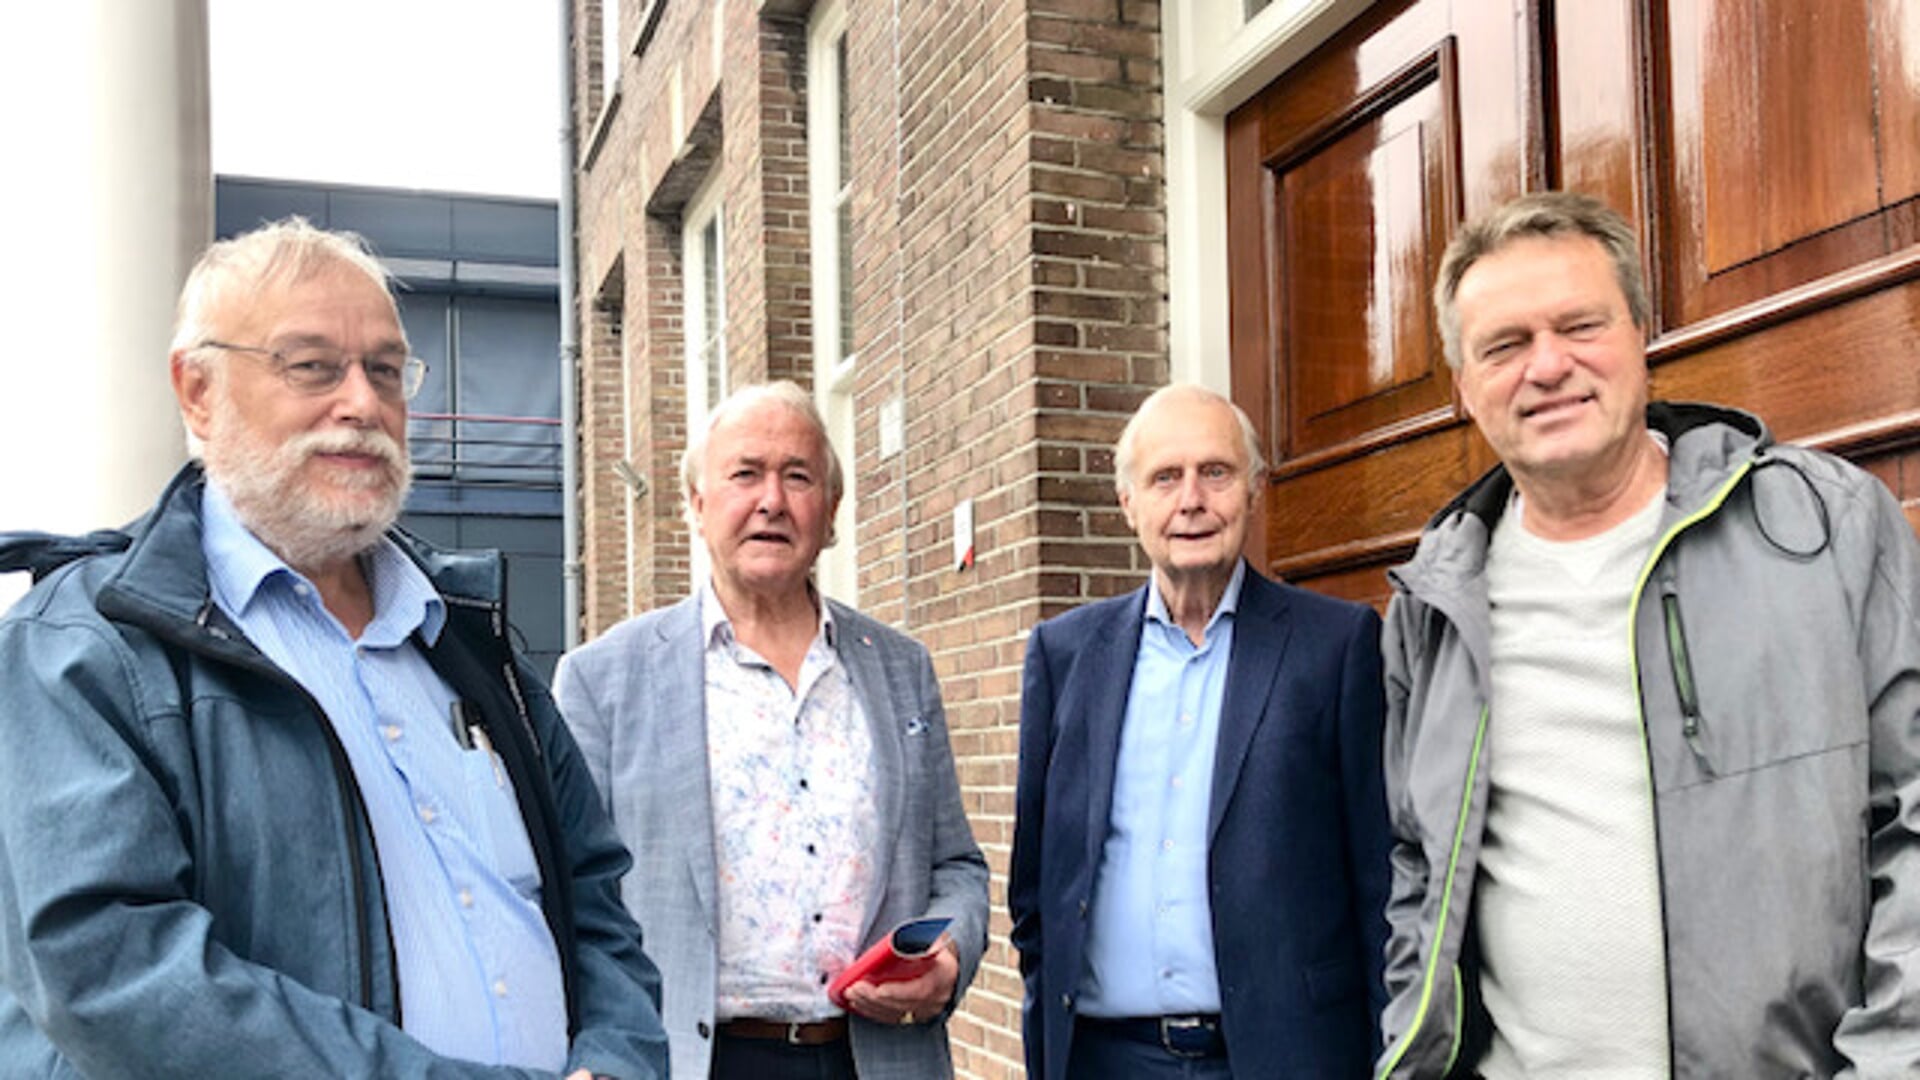 De mensen van Stichting IJmond IJzersterk (vlnr): Wim Moonen, Adrie Winkelaar, Bertus Berghuis en voorzitter Luuk Klaassen. Willem Jonkman ontbreekt.